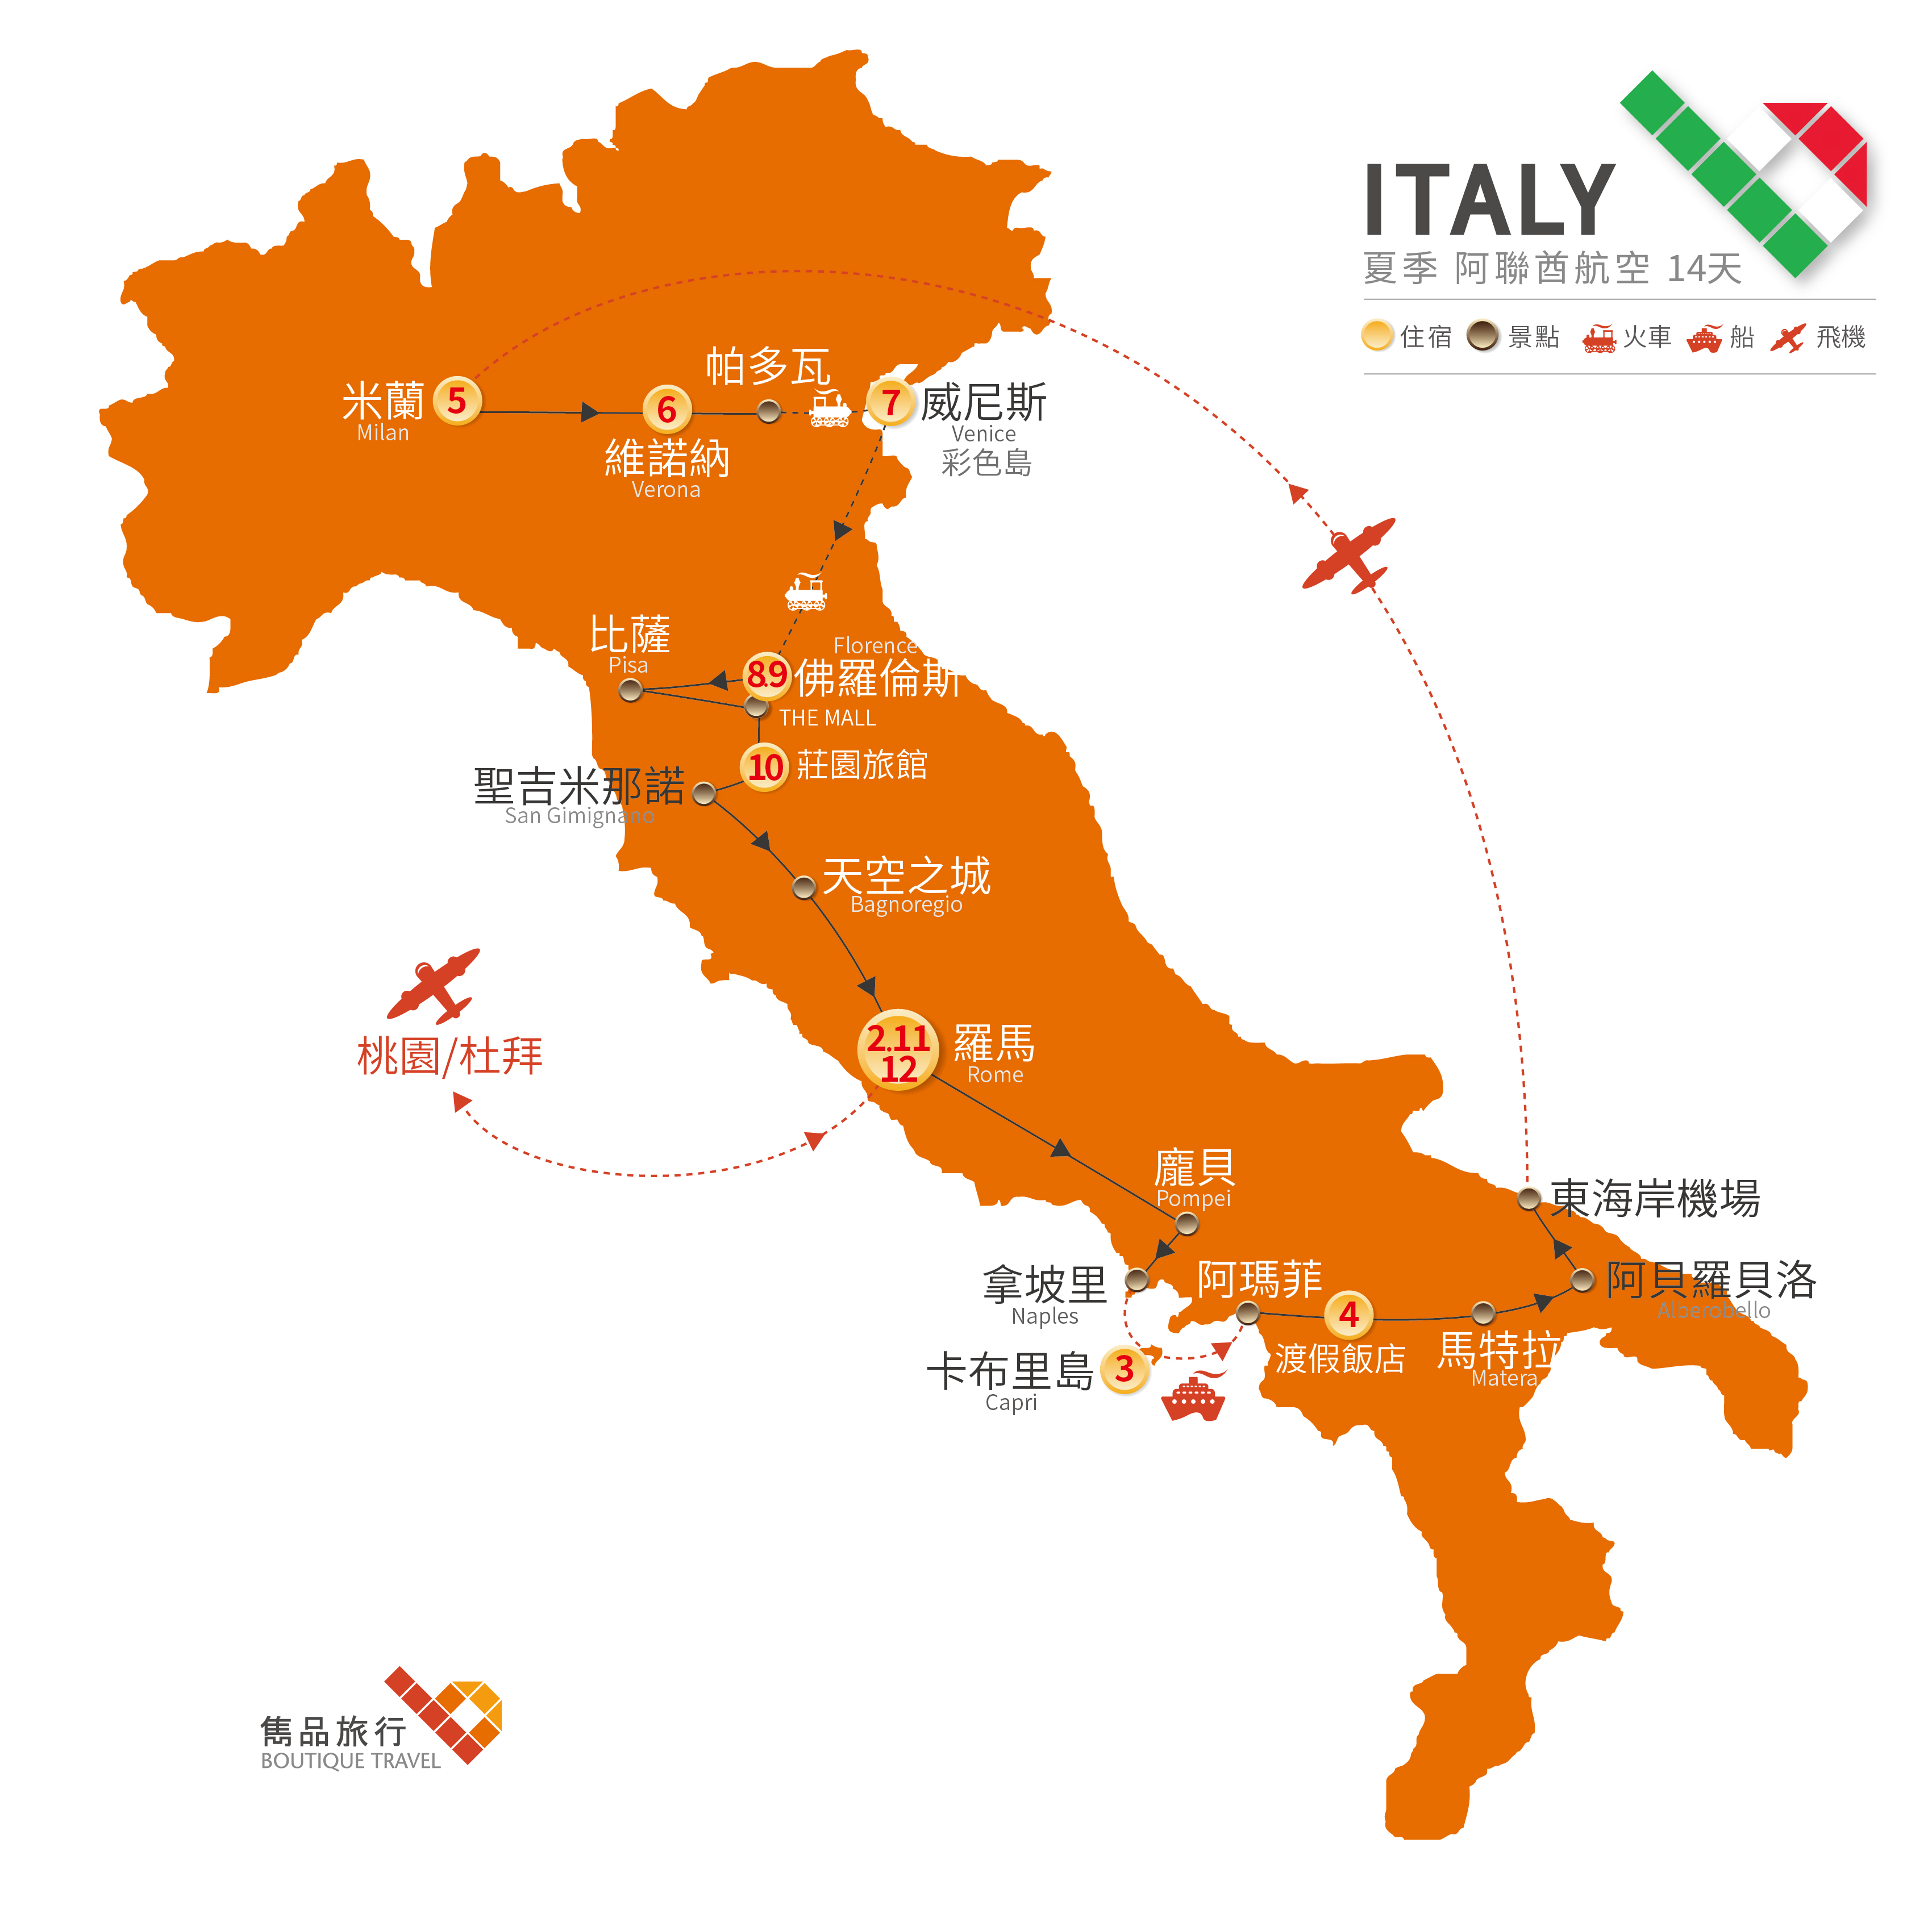 義大利 旅行地圖-夏日浪漫 義式情懷 14天